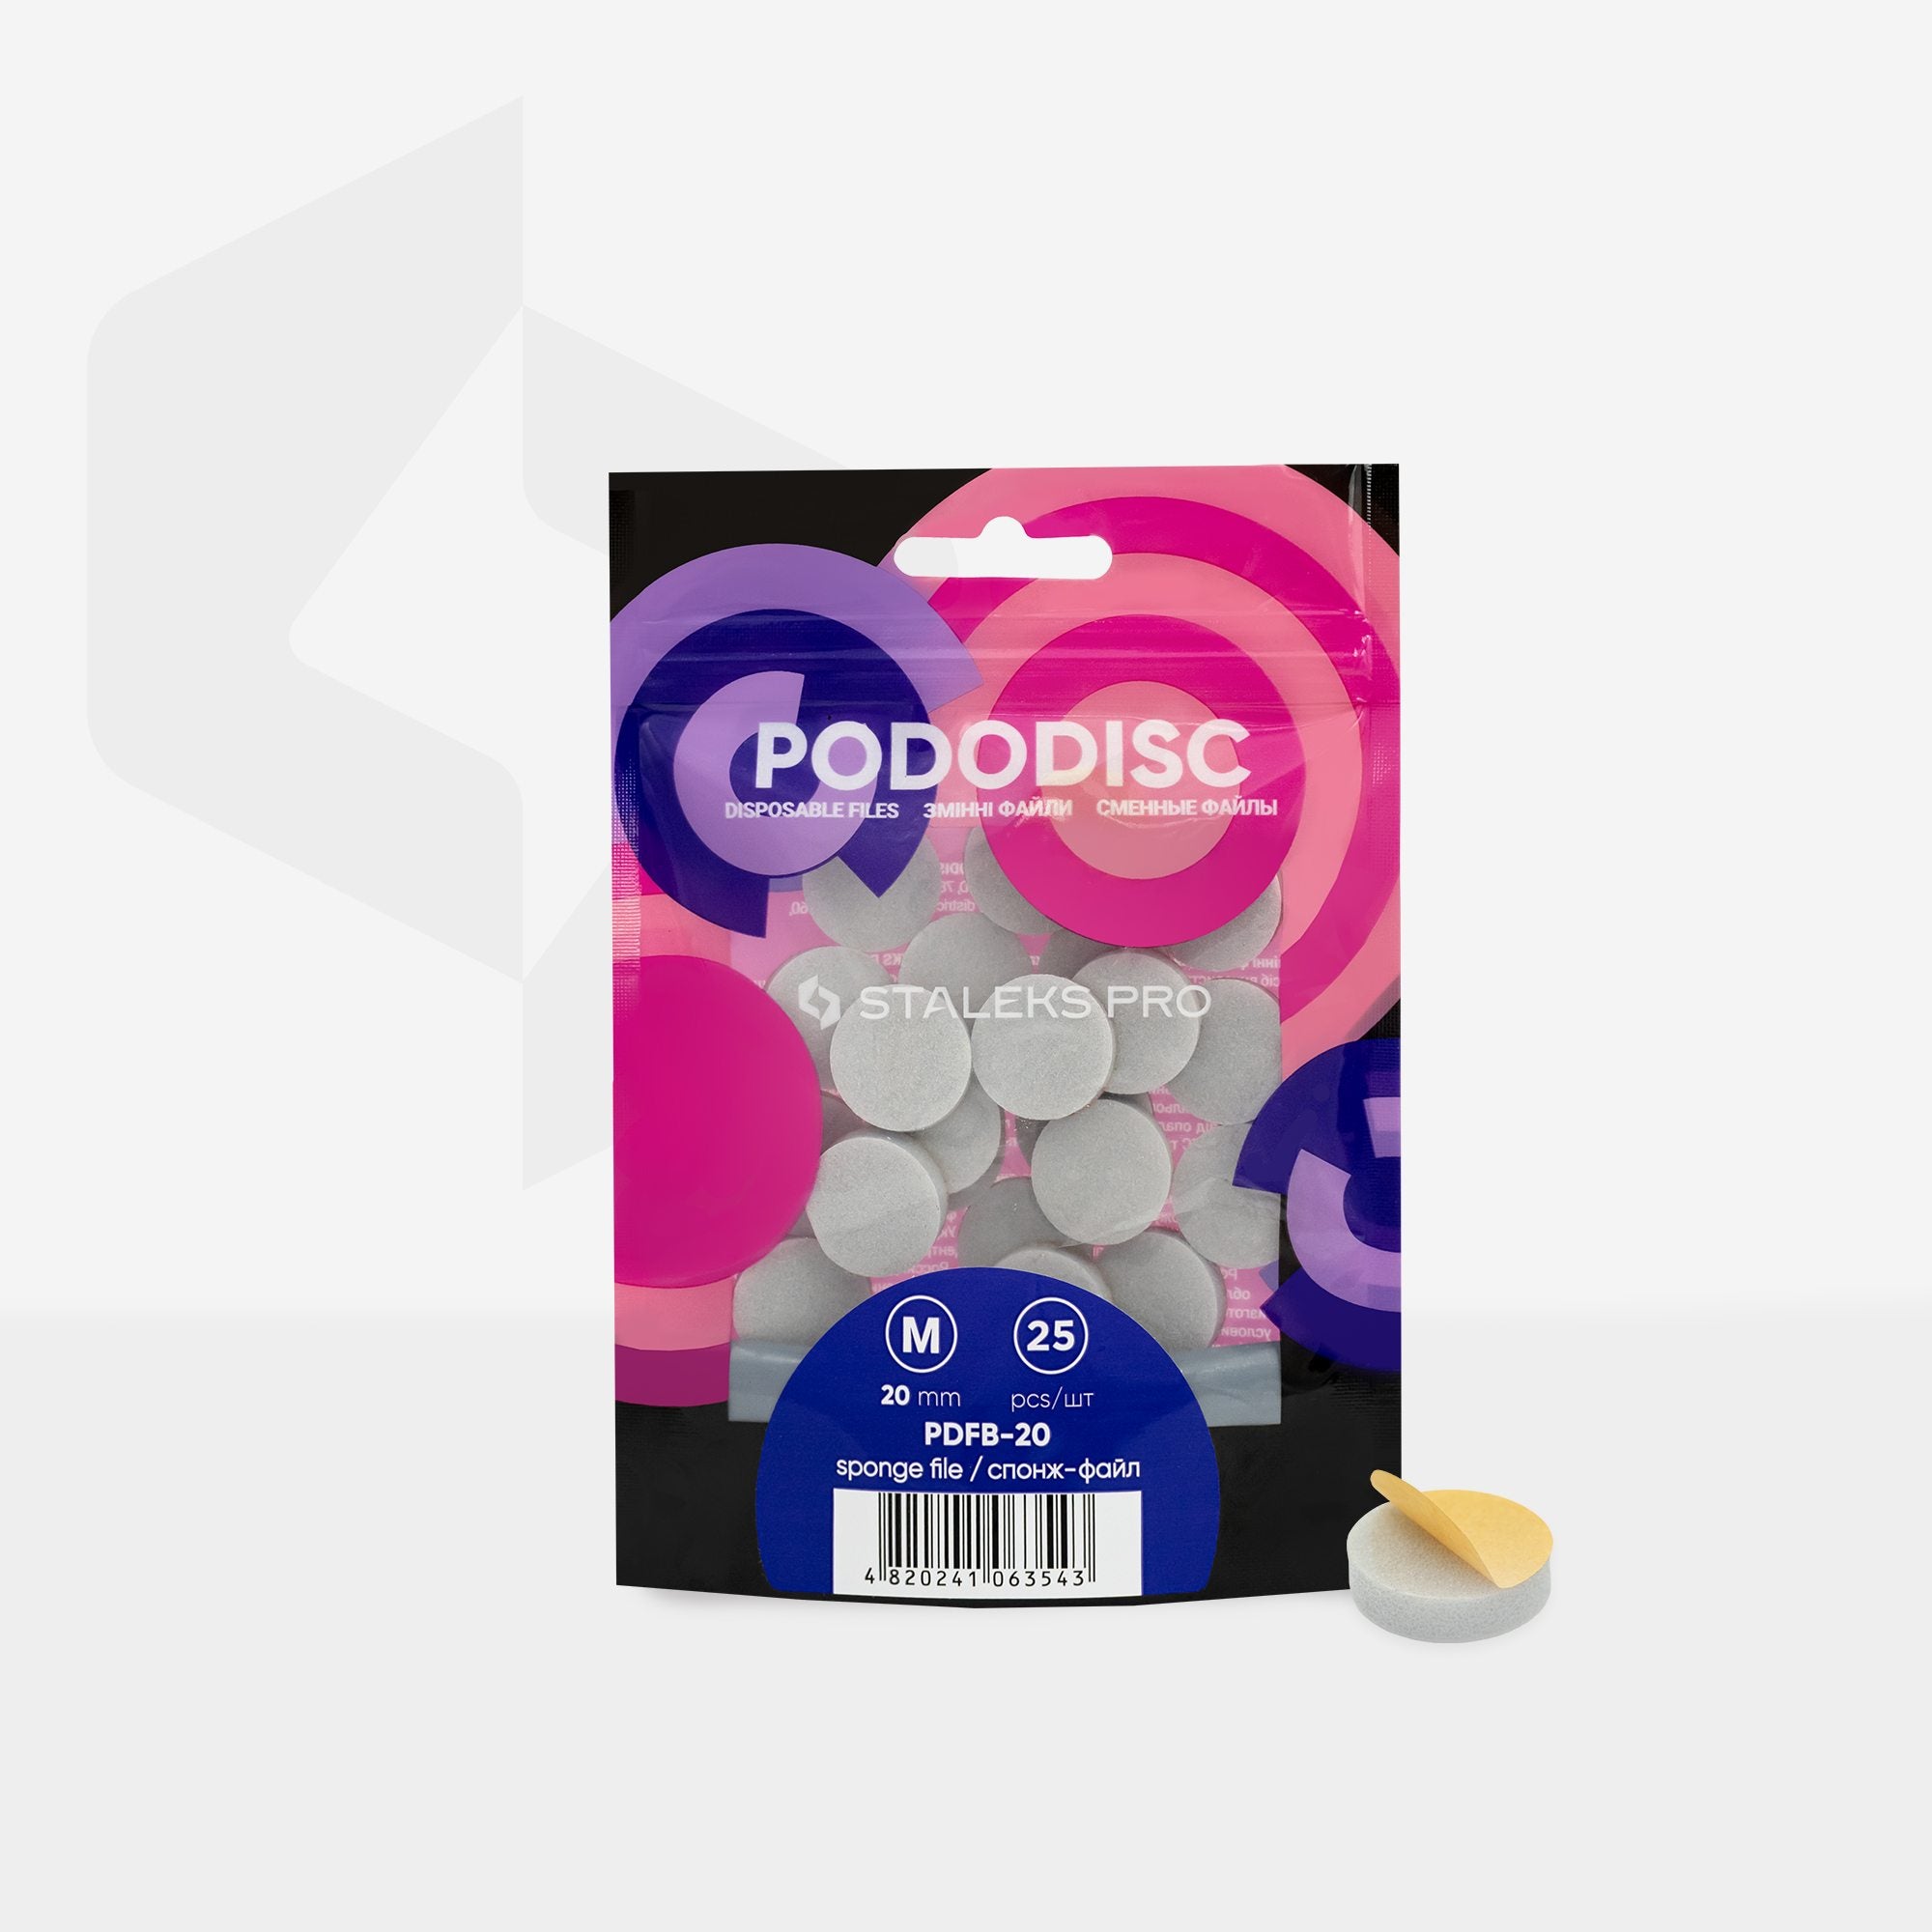 Limas-esponjas descartáveis para disco de pedicura PODODISC STALEKS PRO M (25 peças)